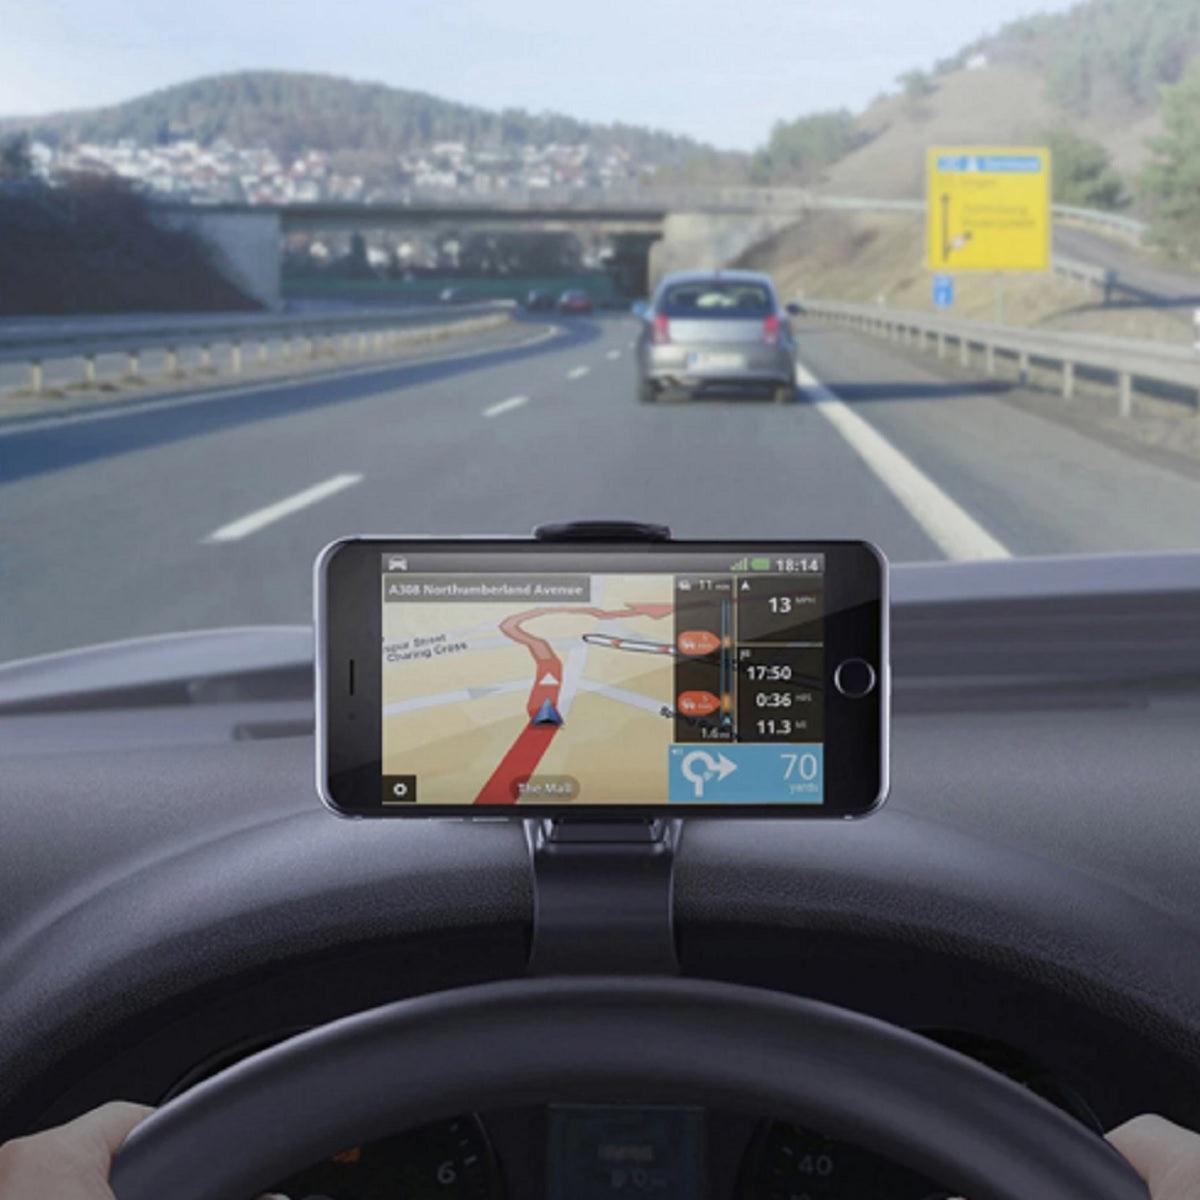 Car Phone Holder Dashboard Mount and Universal GPS Holder - dealskart.com.au